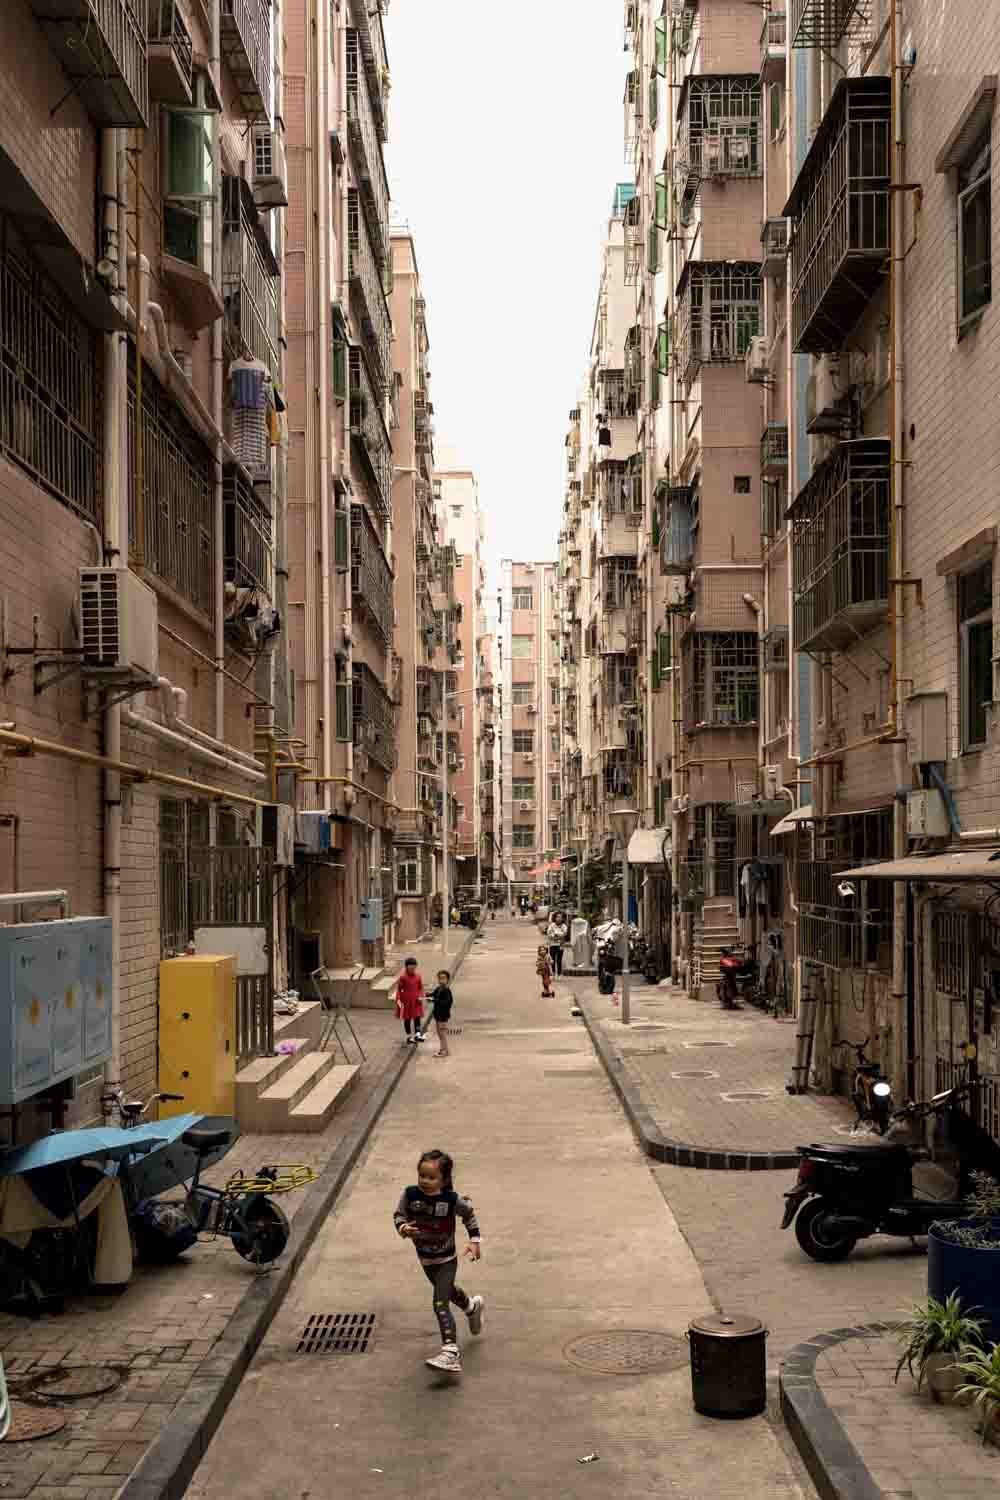 HuangGang Urban Village